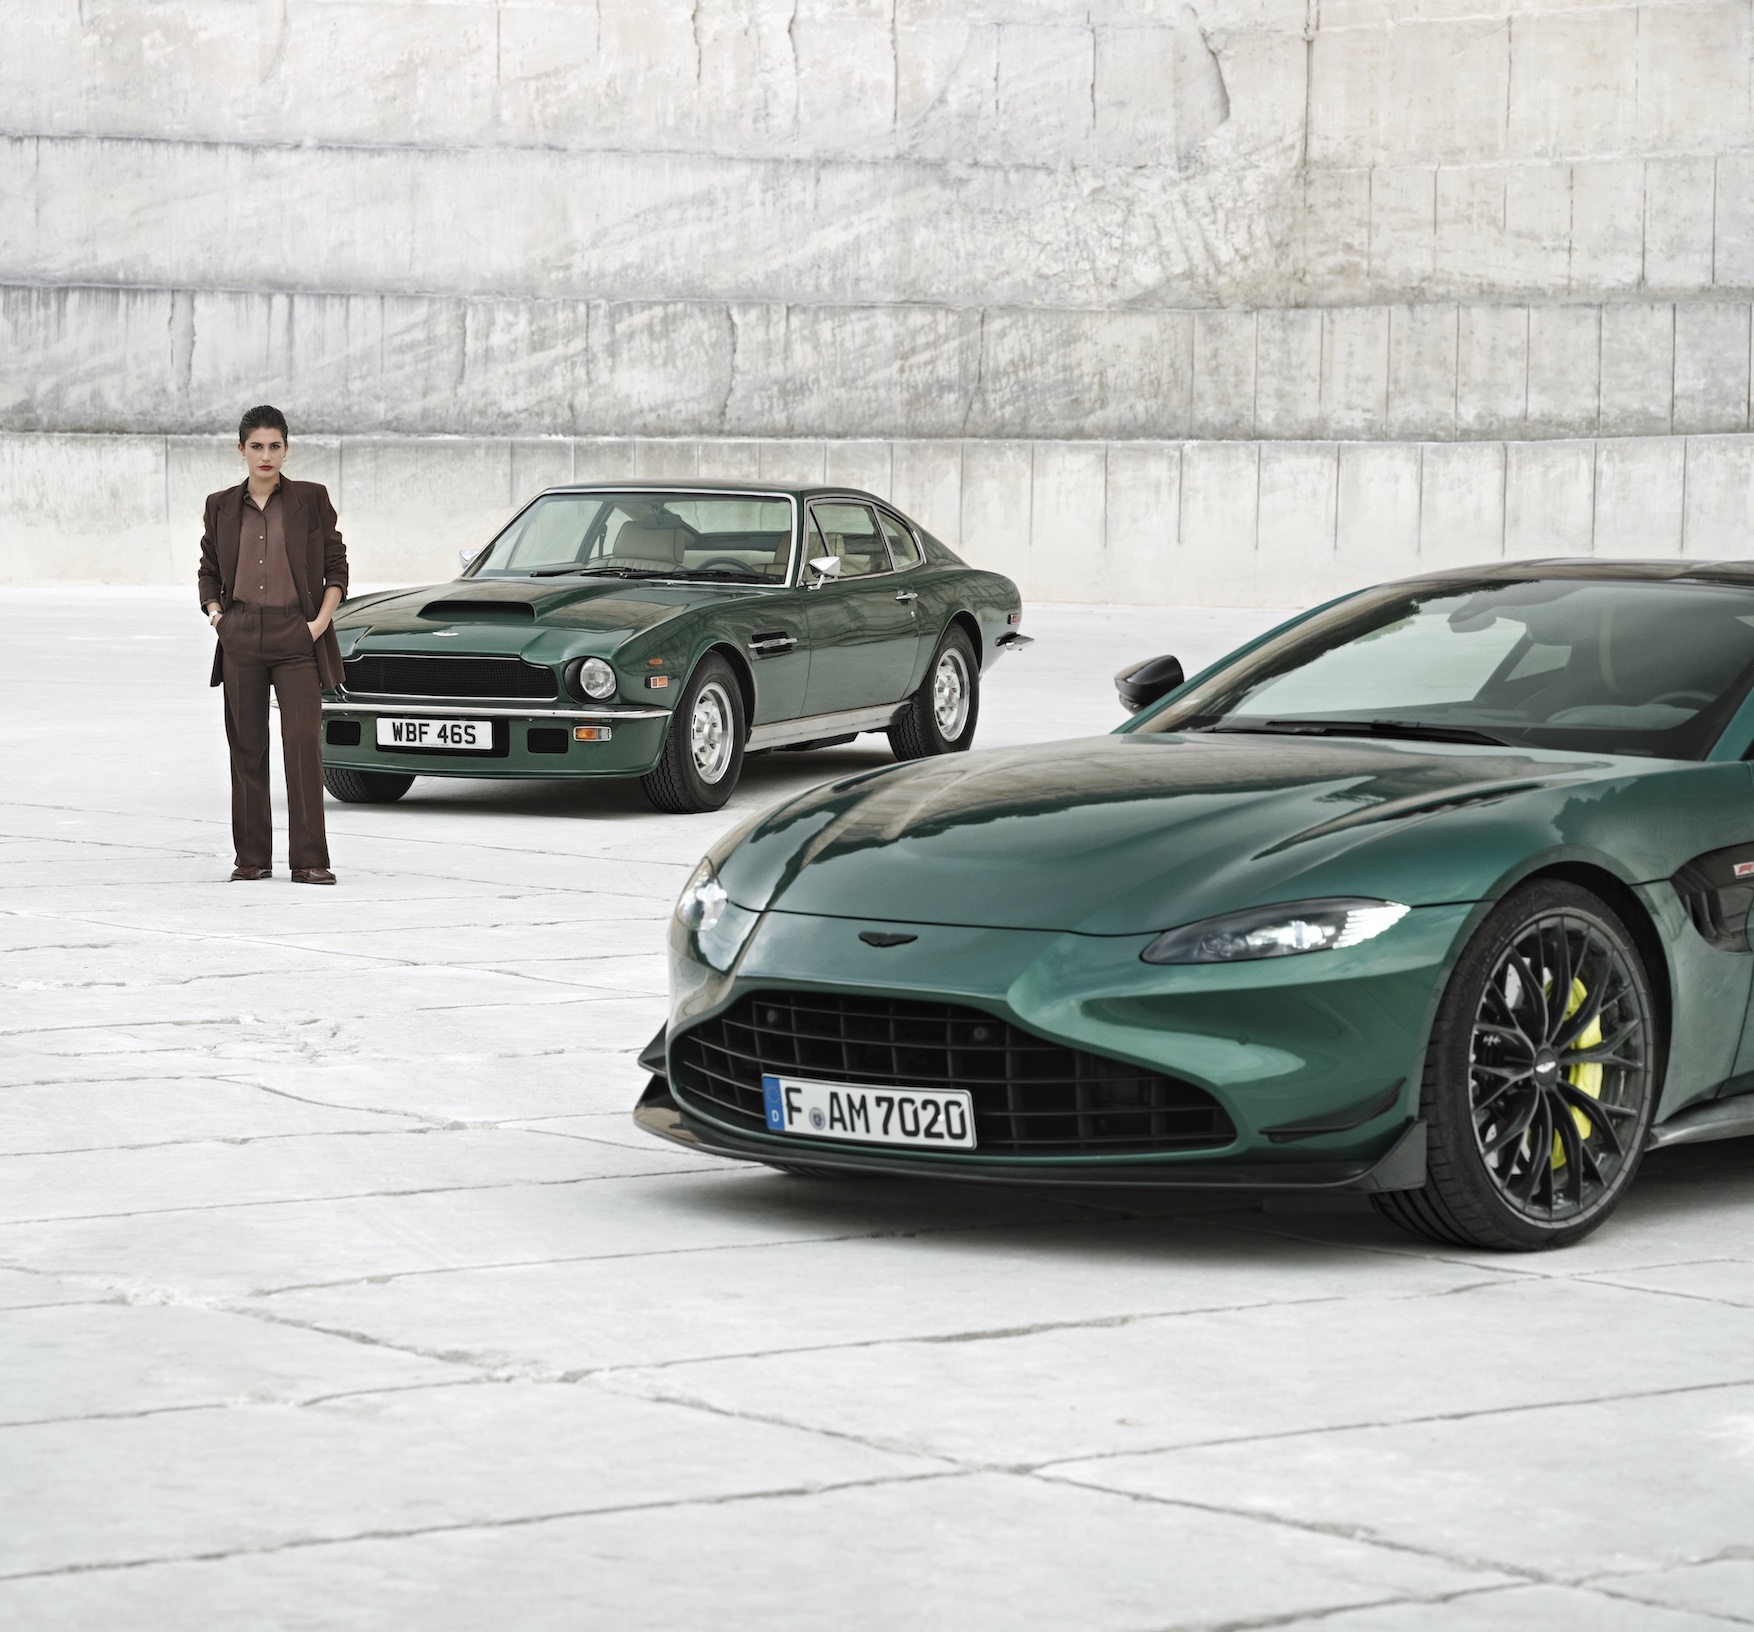 Girard Perregaux Laureato Green Ceramic Edición Aston Martin autos